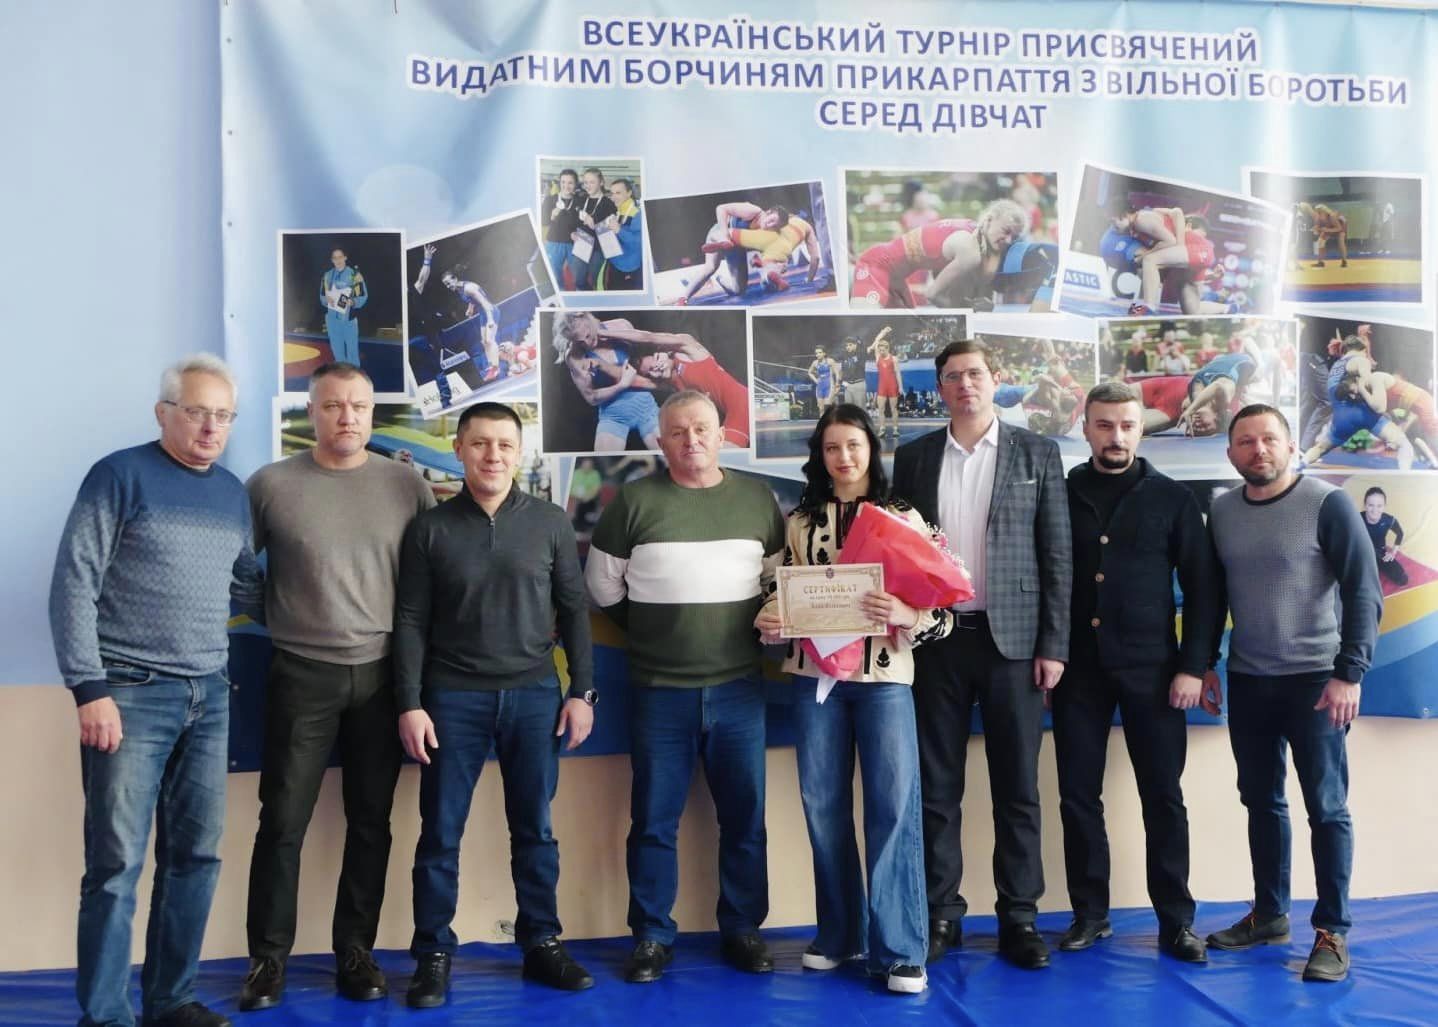 Прикарпатка Аліна Філіпович здобула срібло на континентальному чемпіонаті Європи з вільної боротьби